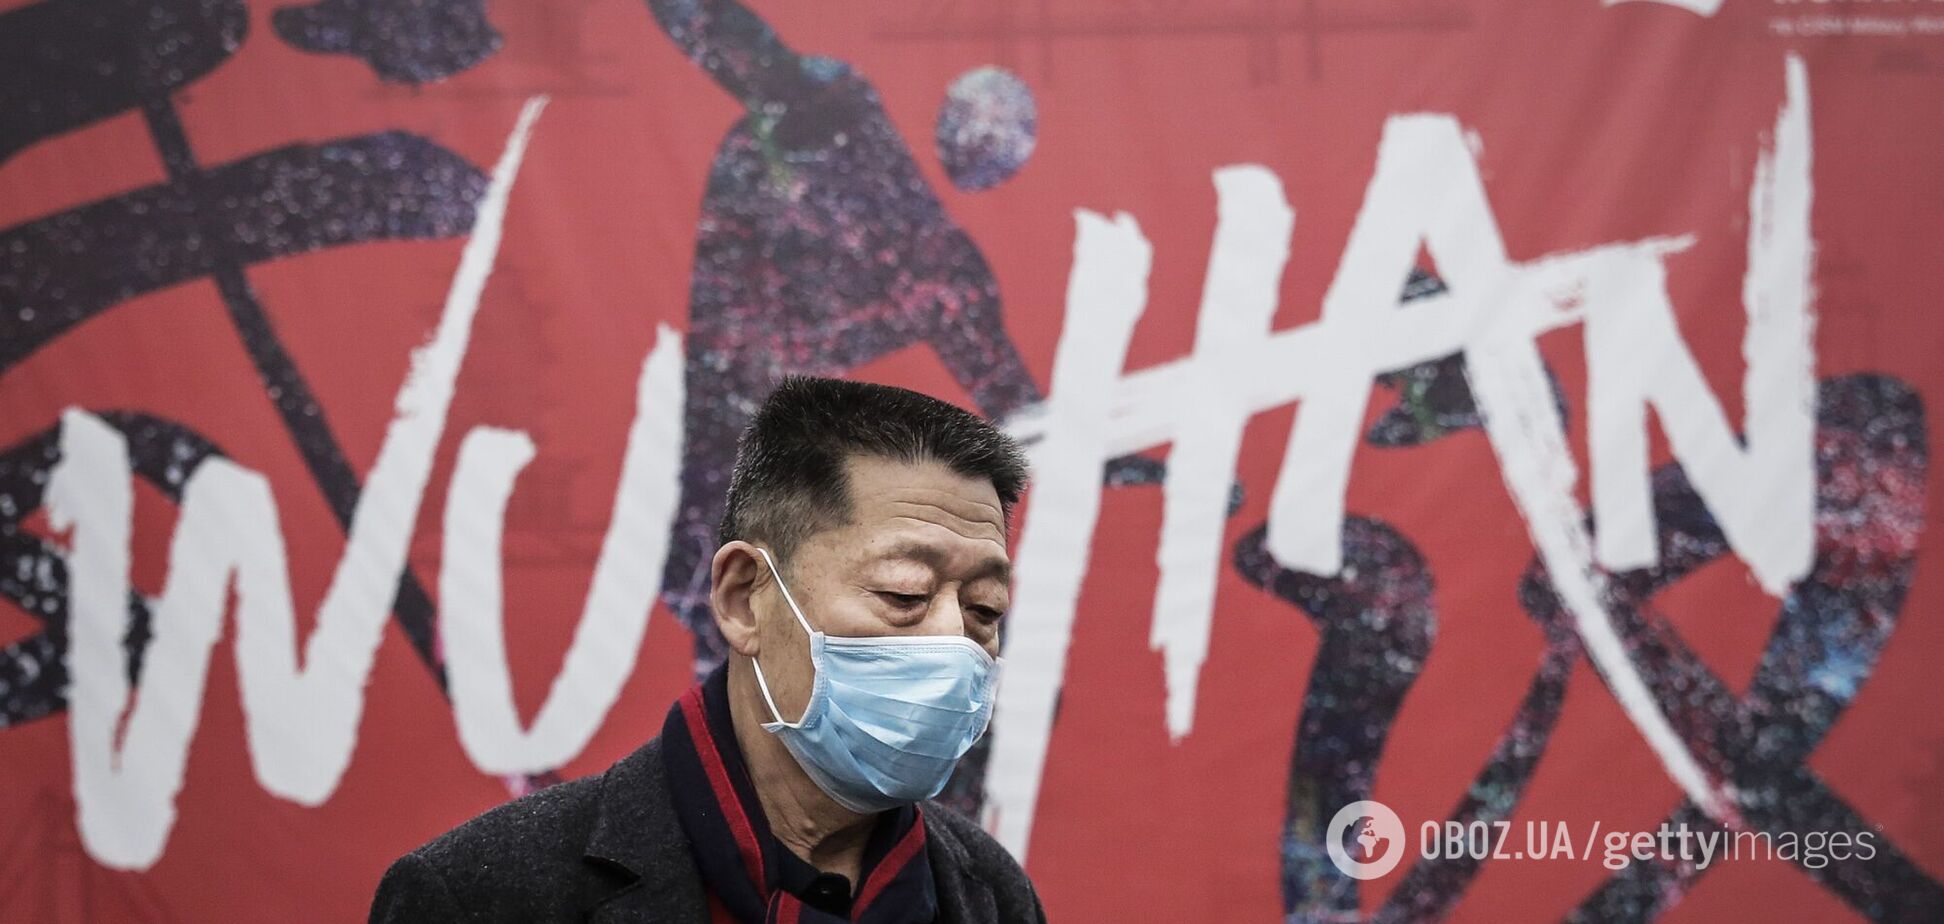 Ученые из Уханя переболели коронавирусом еще до начала пандемии: в Китае ответили